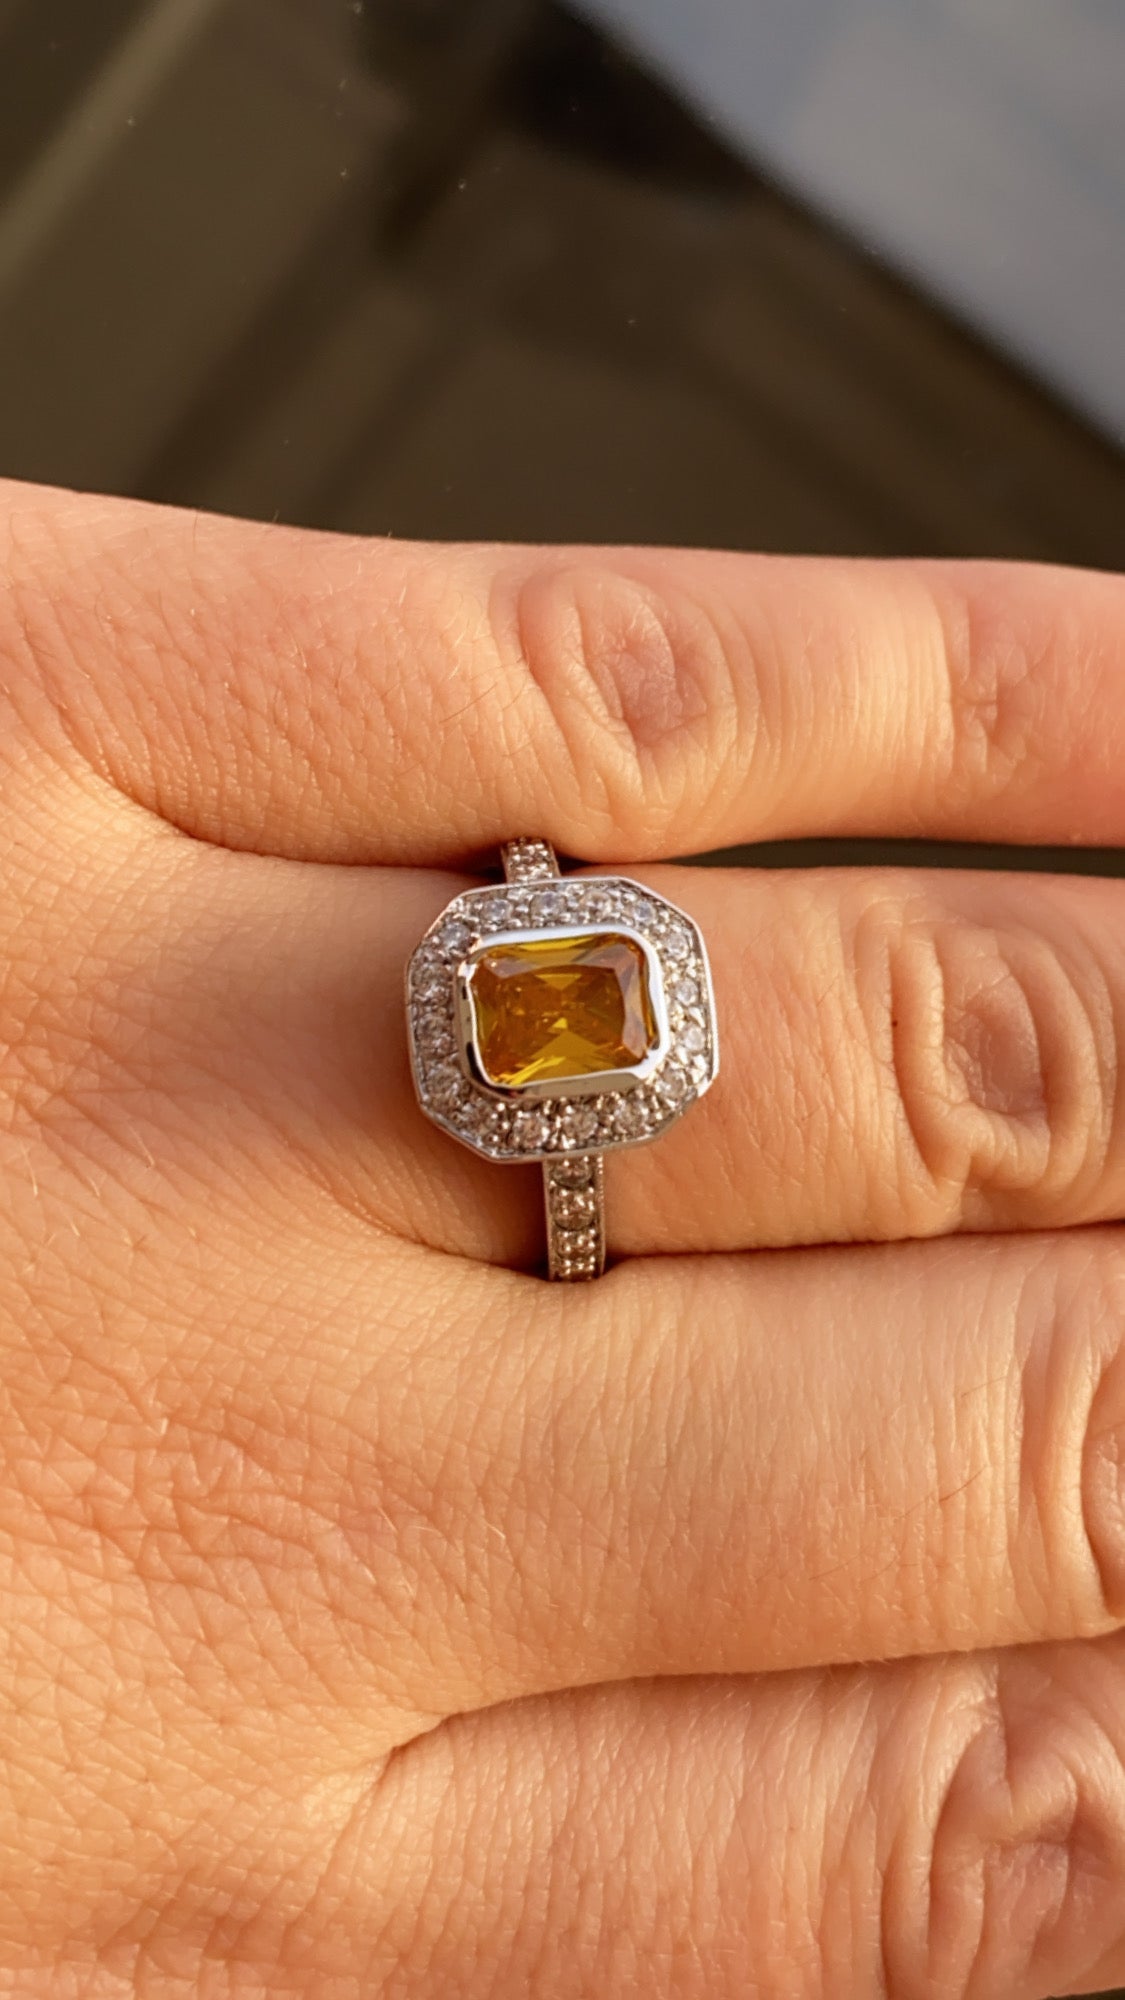 Yellow stone ring